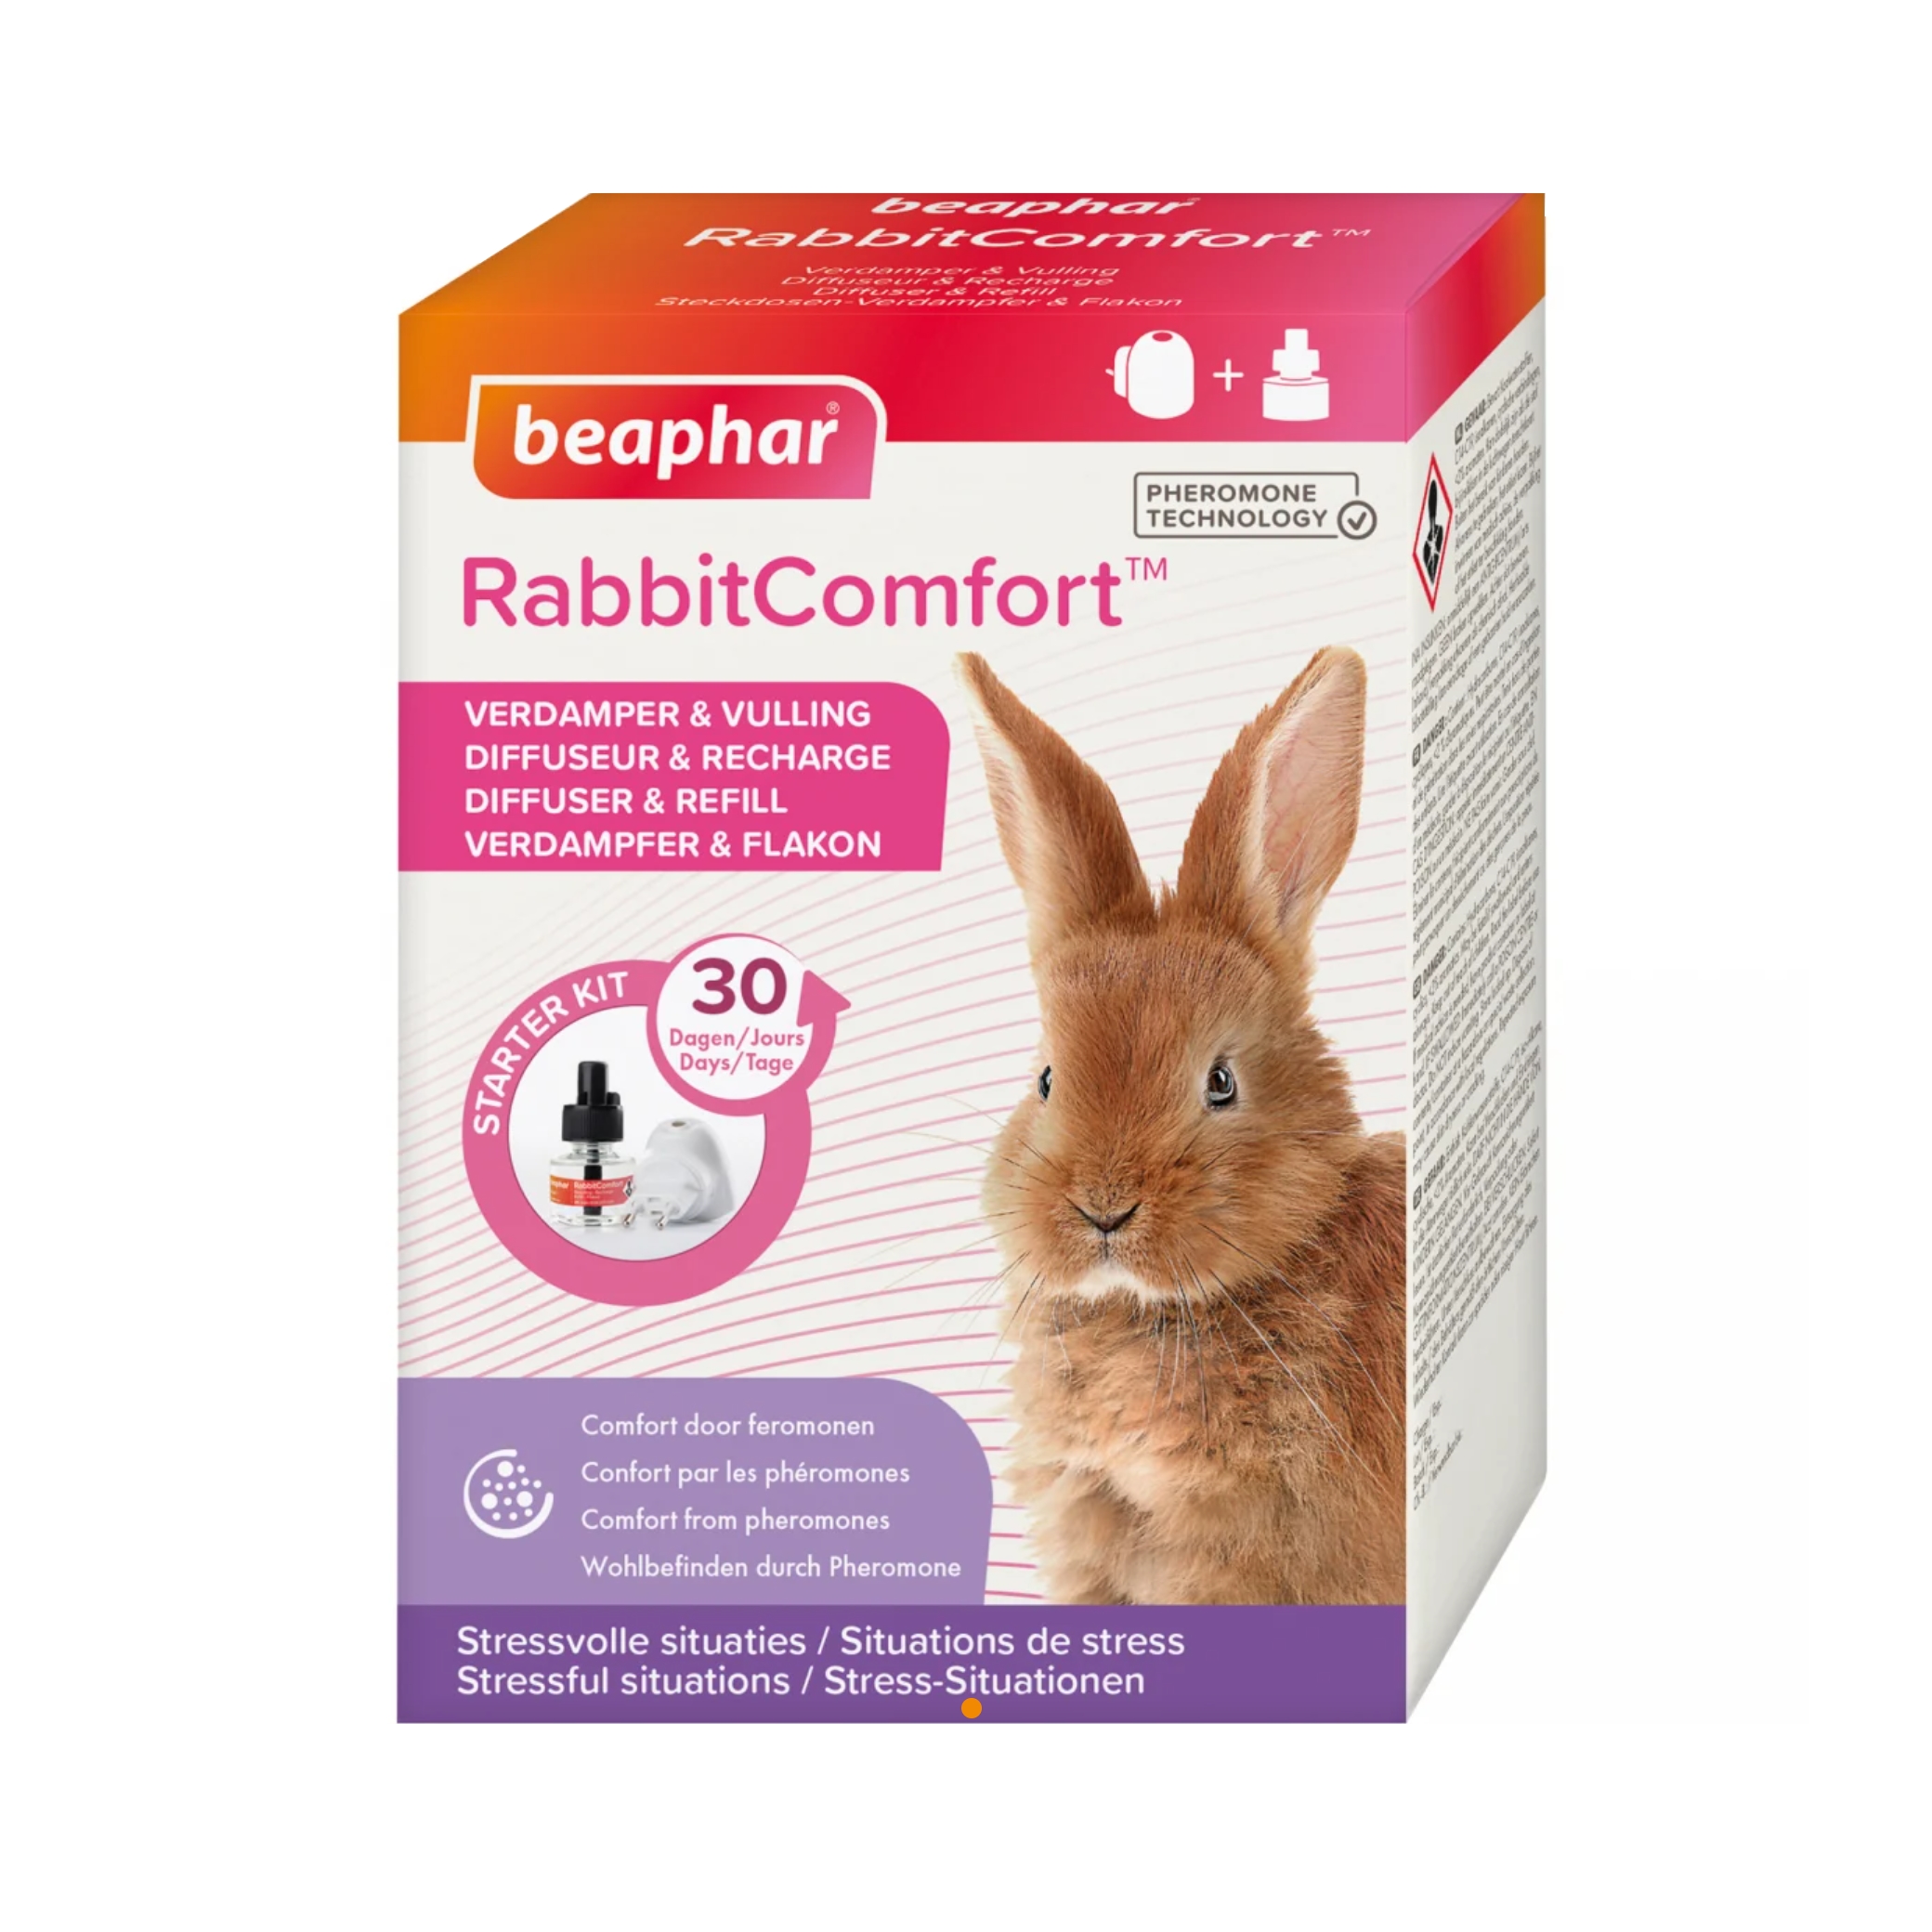 RabbitComfort